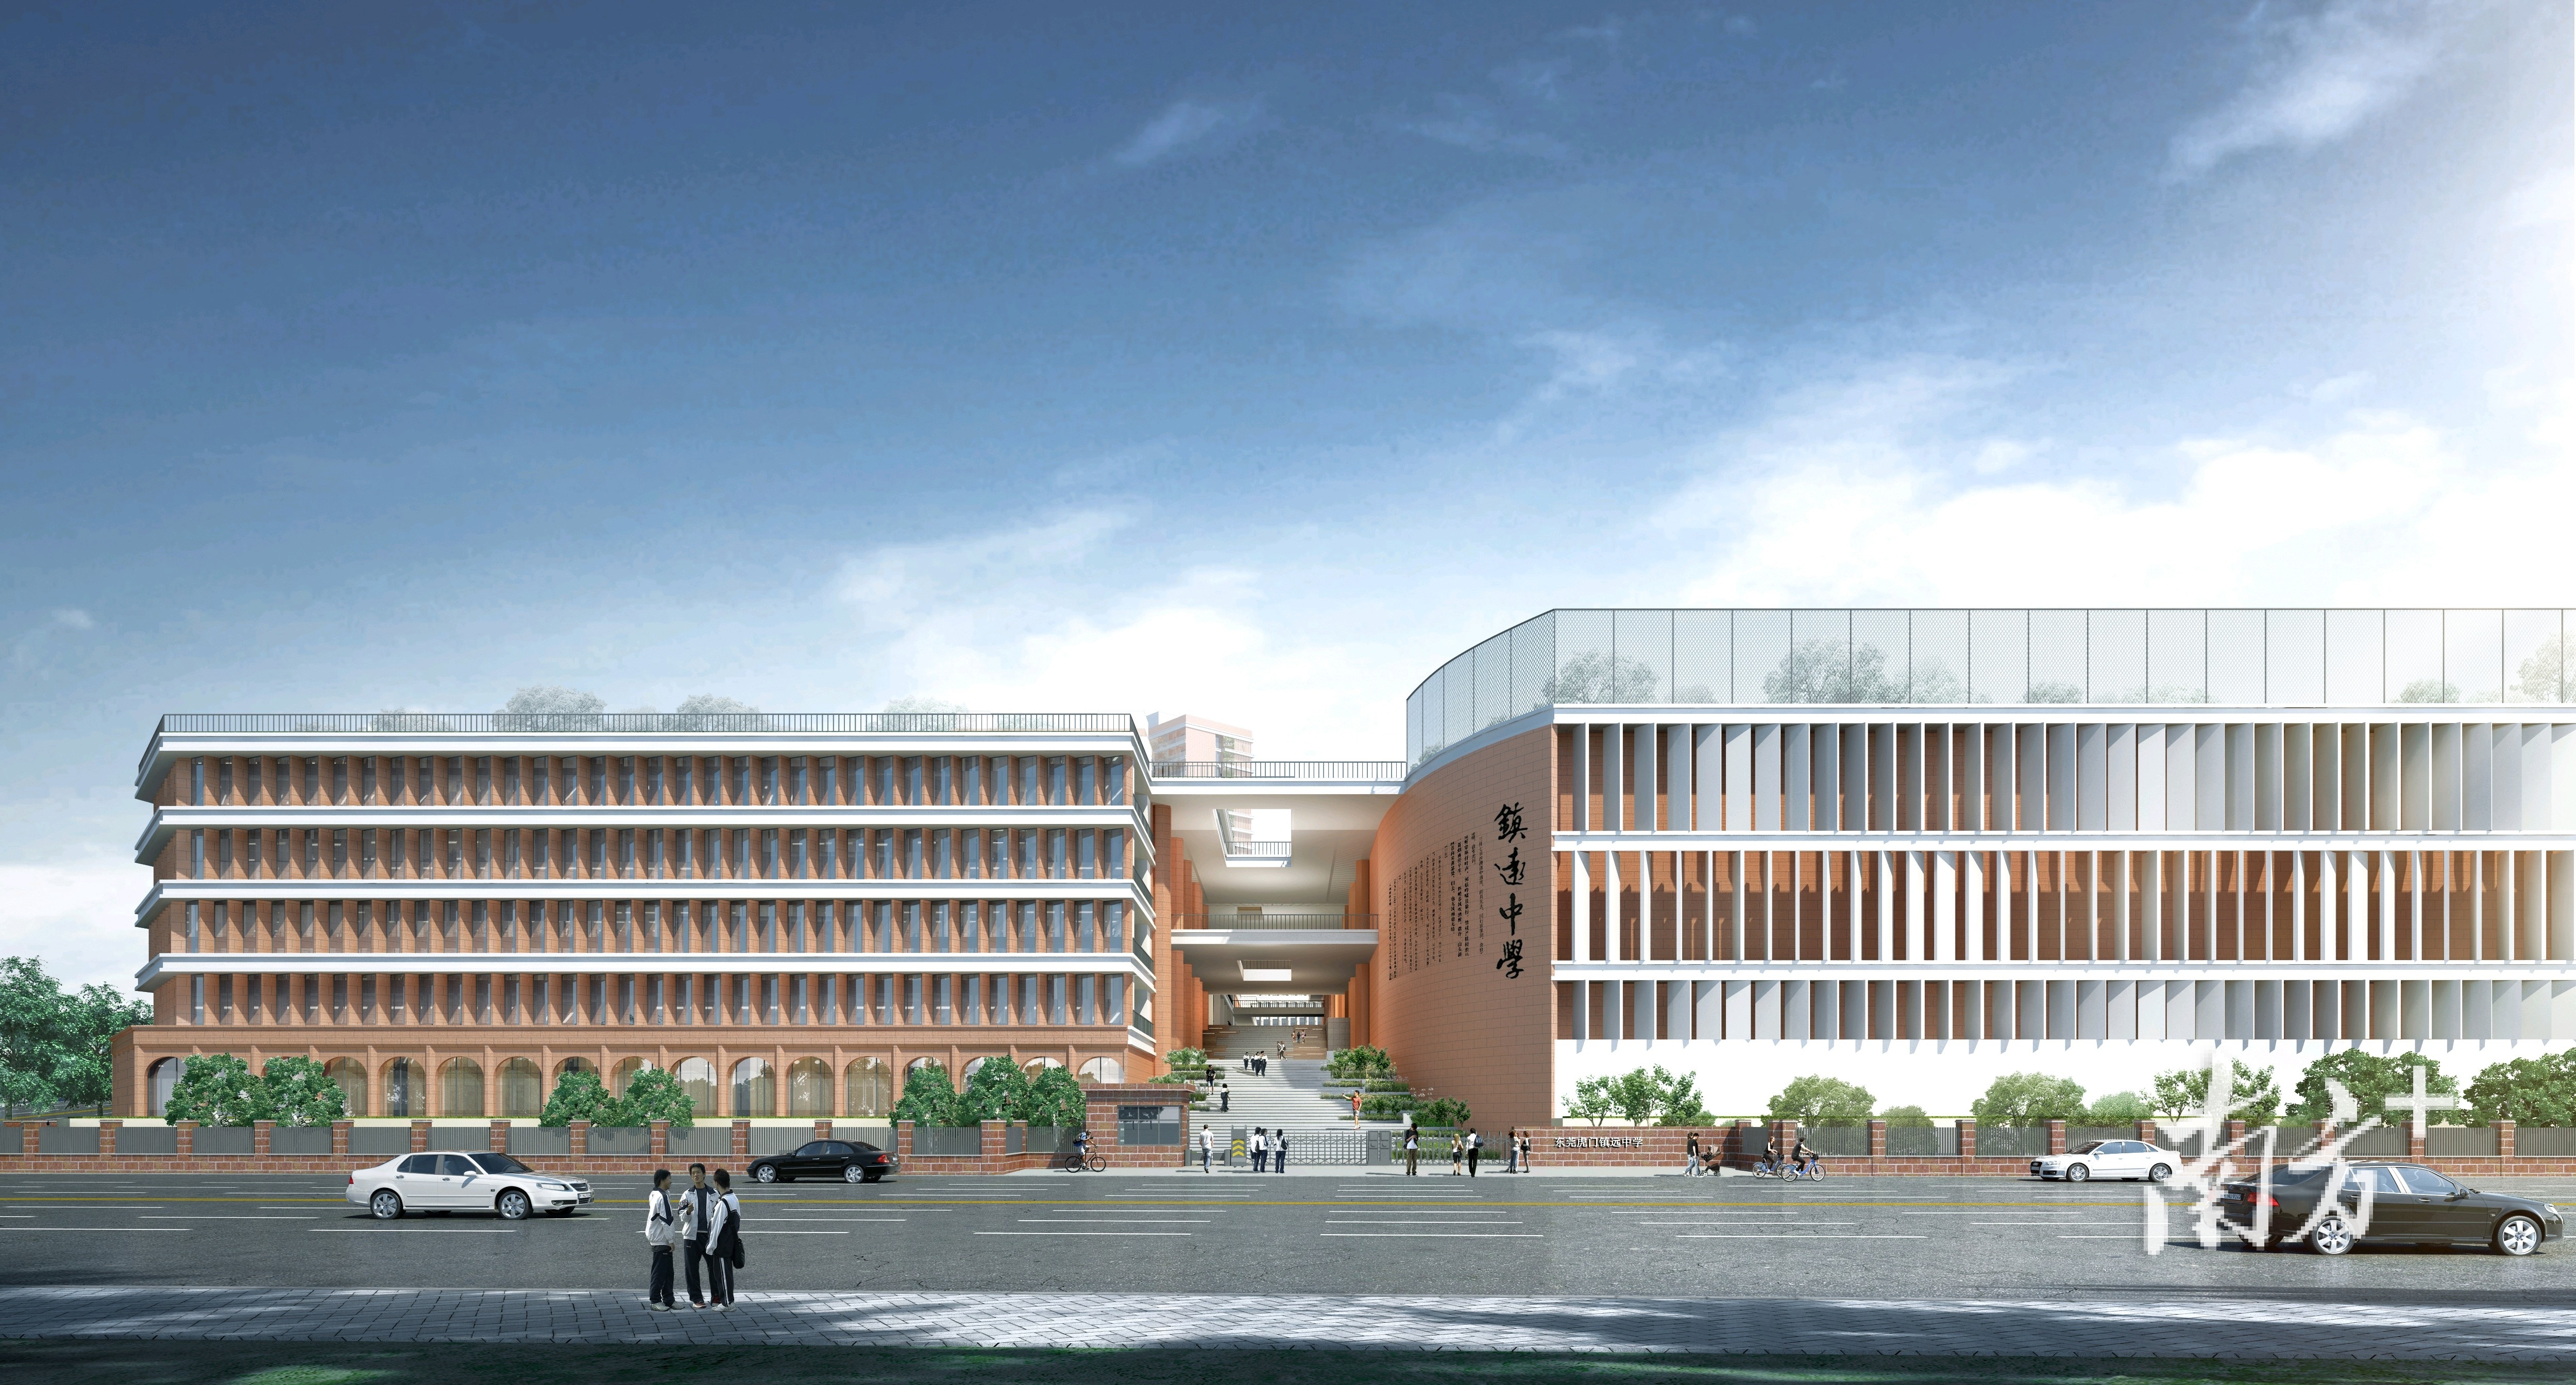 镇远中学是滨海湾新区在威远岛兴建的第一所高品质公办初级中学,项目